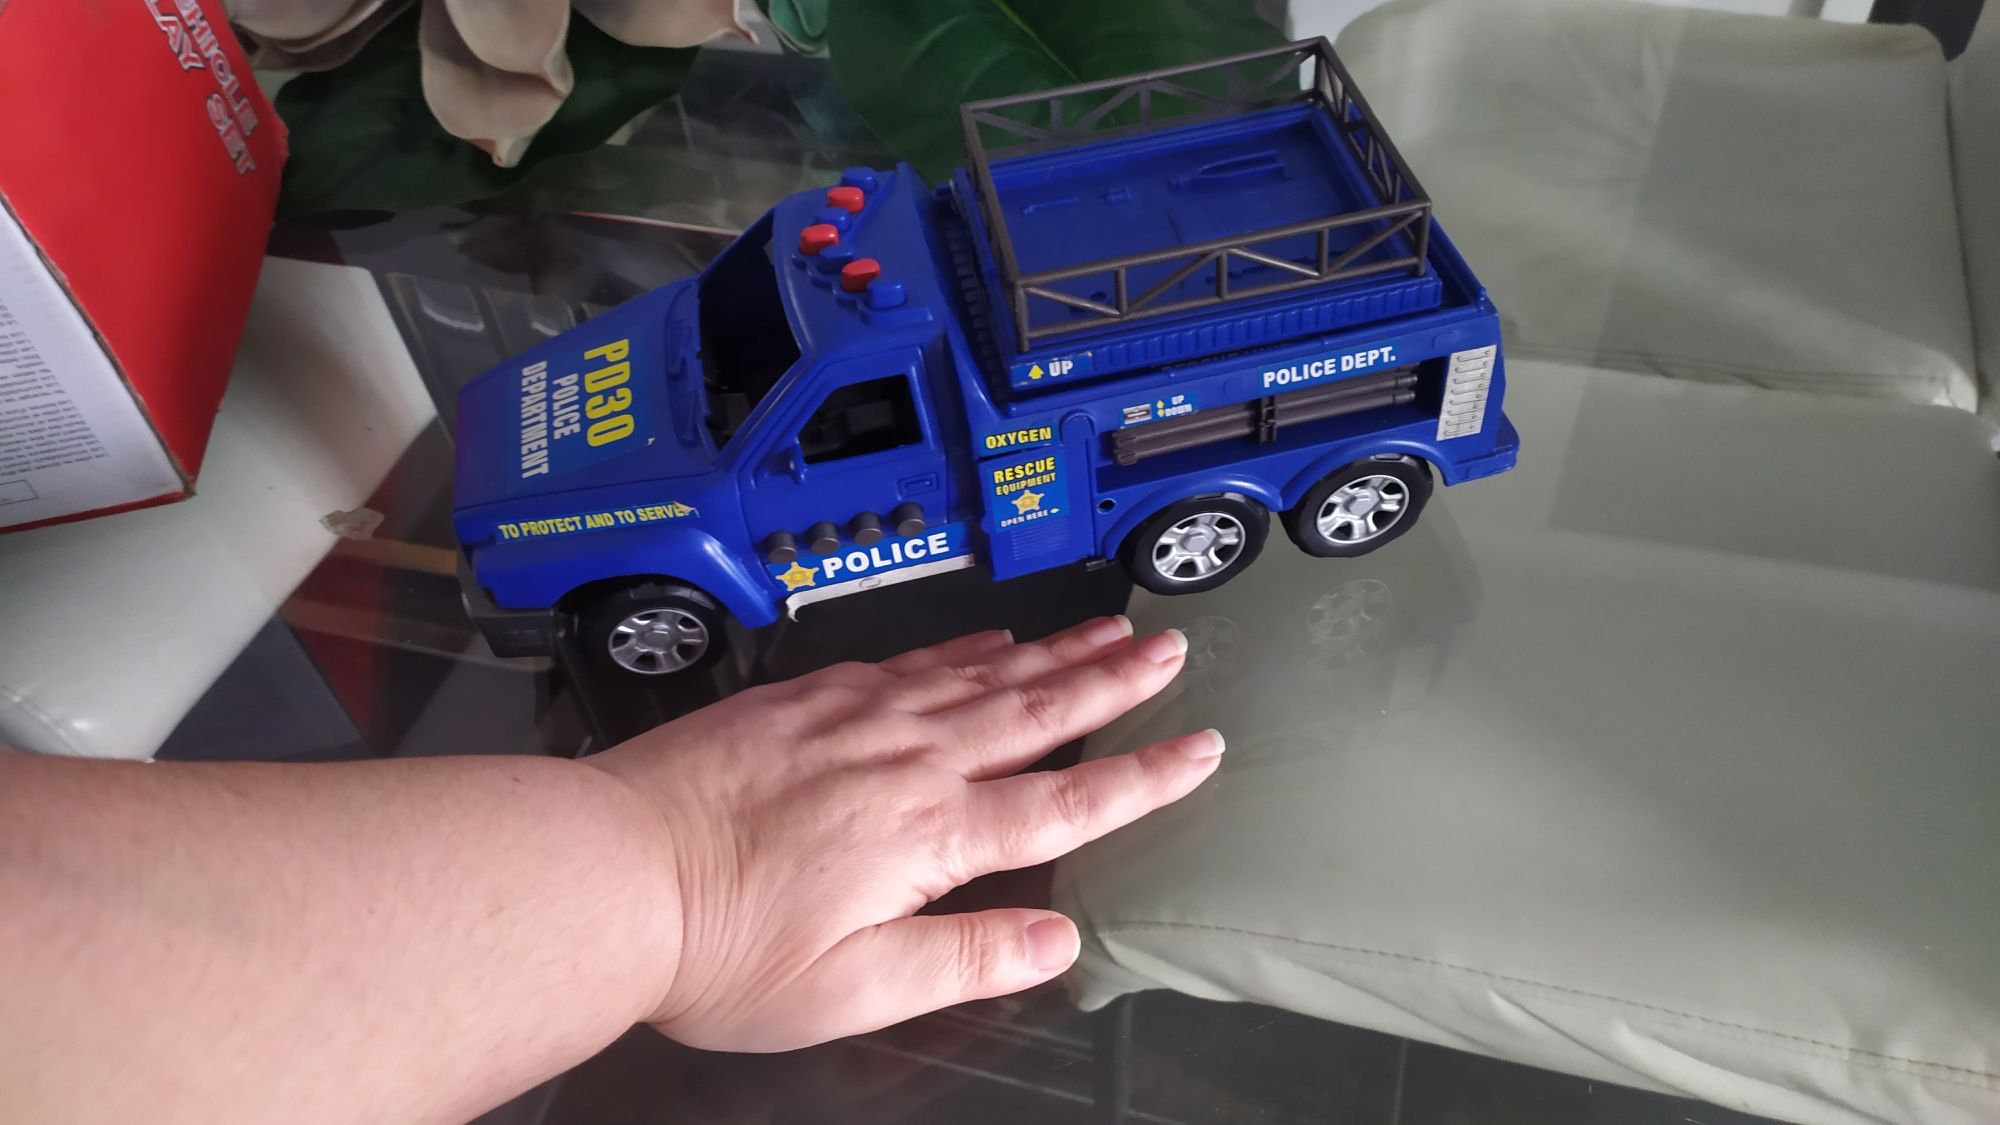 NOVO: carro polícia grande com sons, elevador